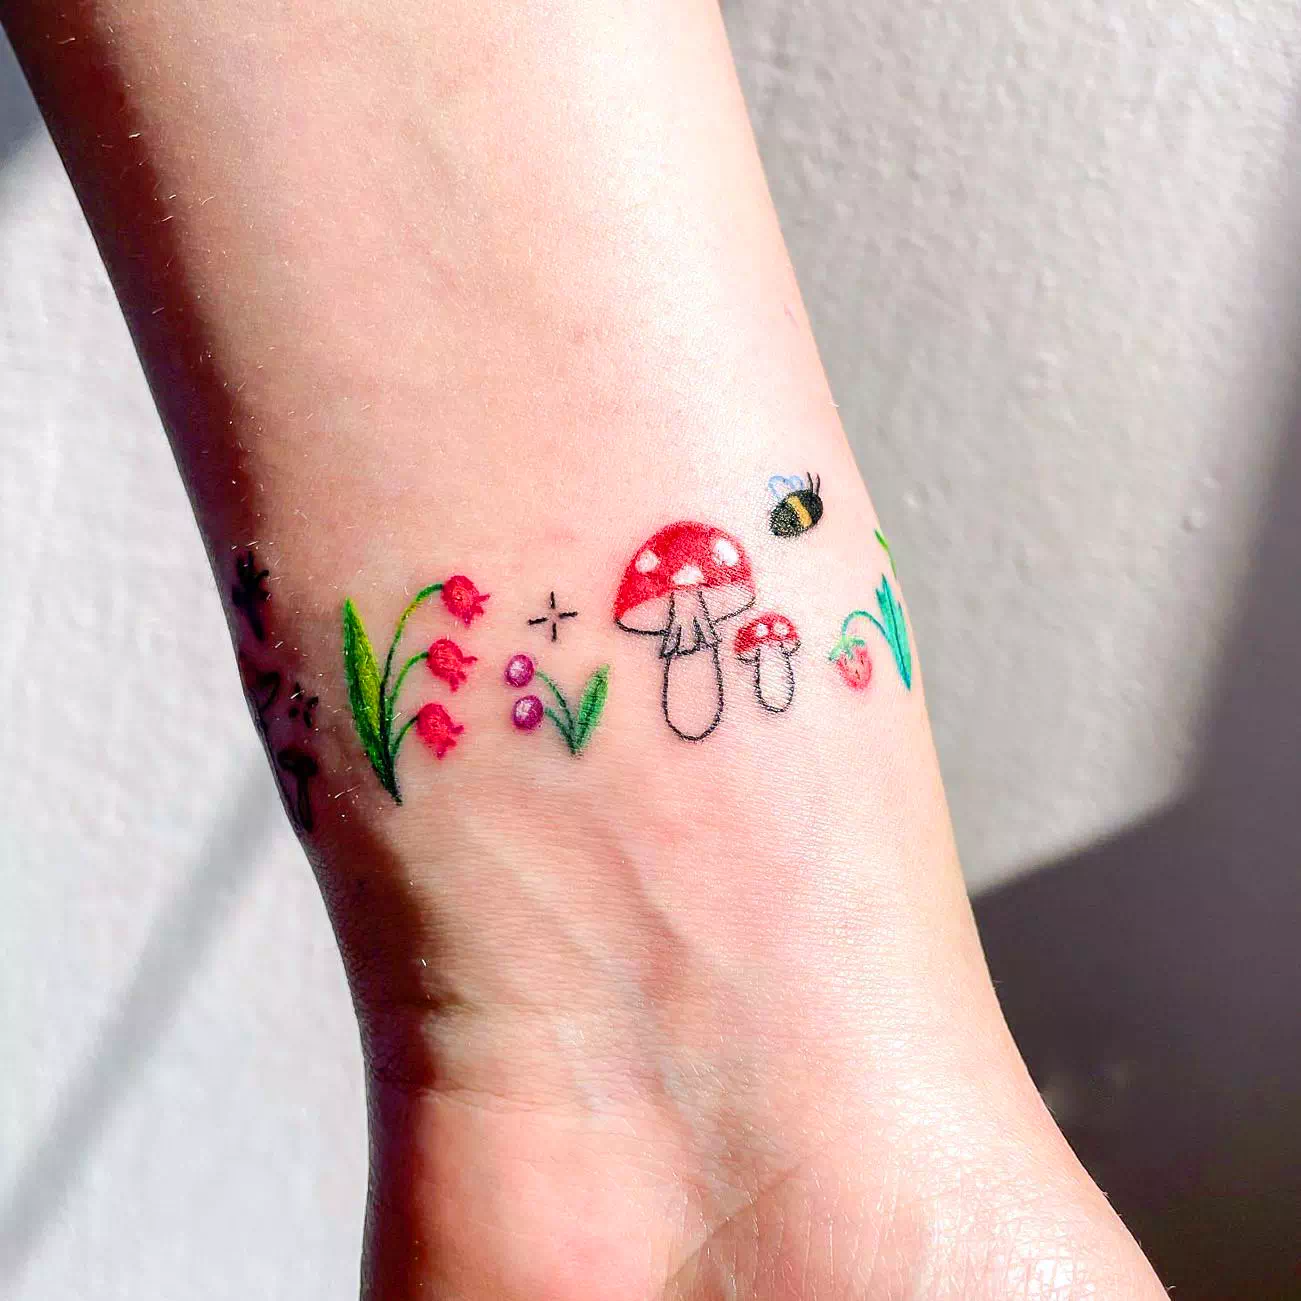 Armband Tattoo Ideen Natur inspiriert